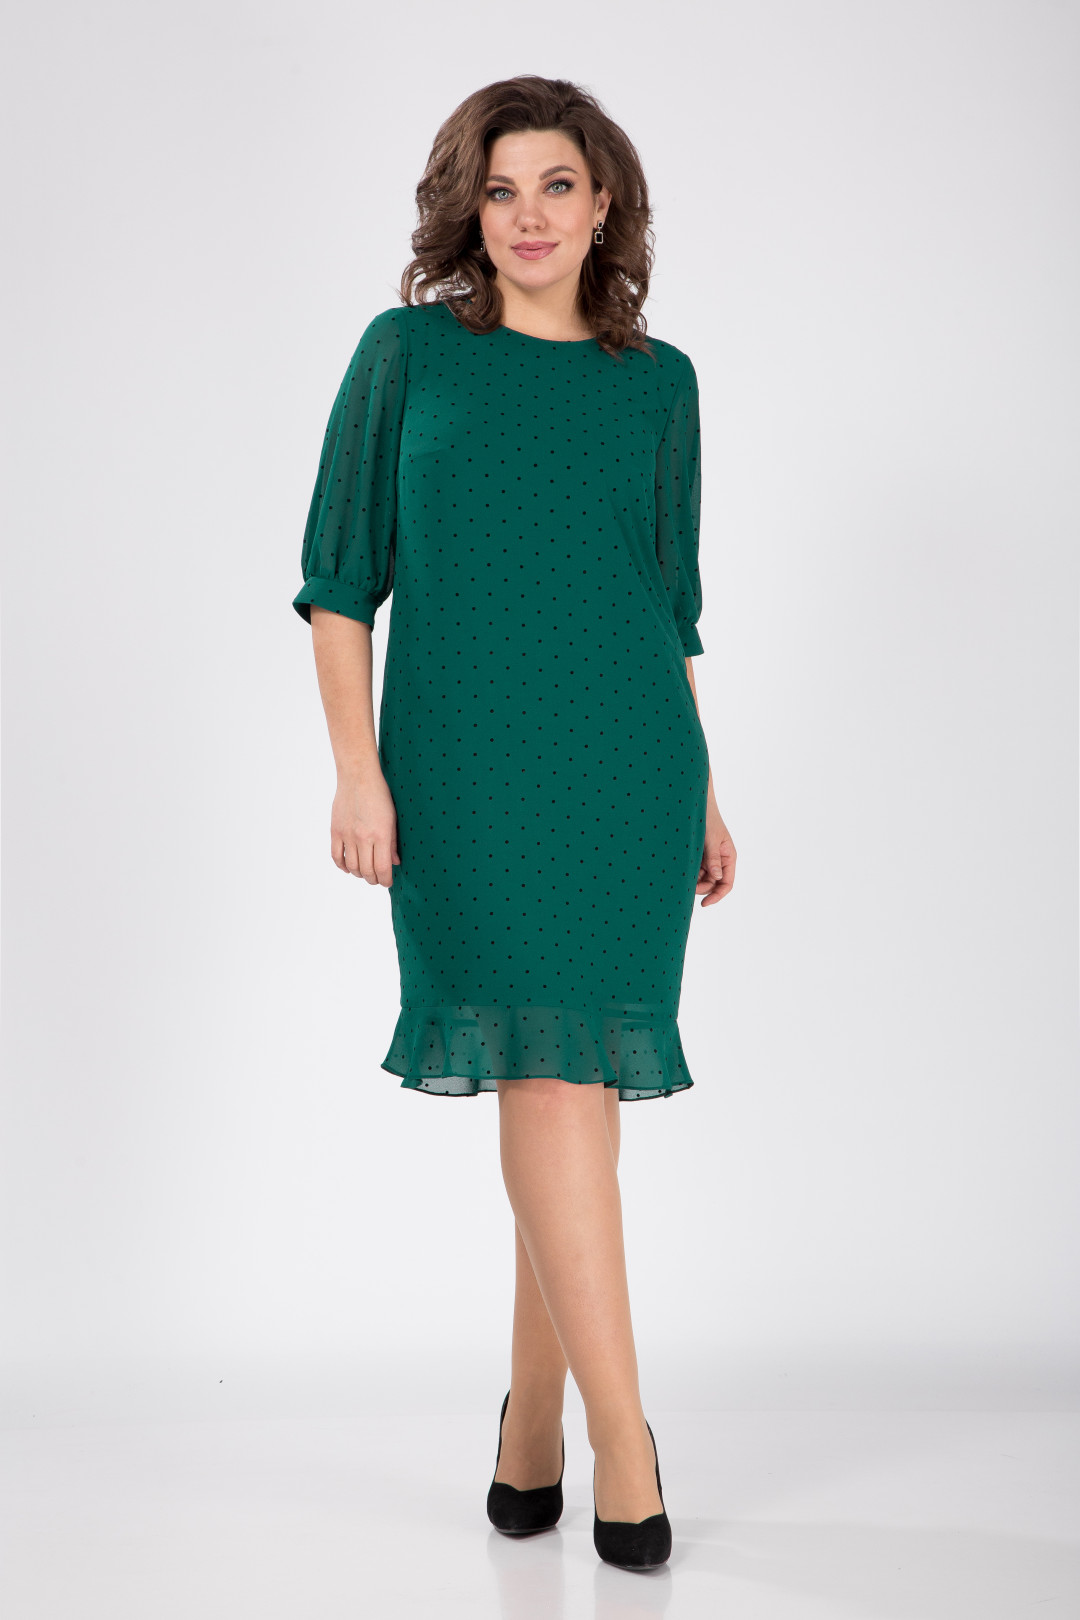 Платье Карина Делюкс В-262-3 зеленый